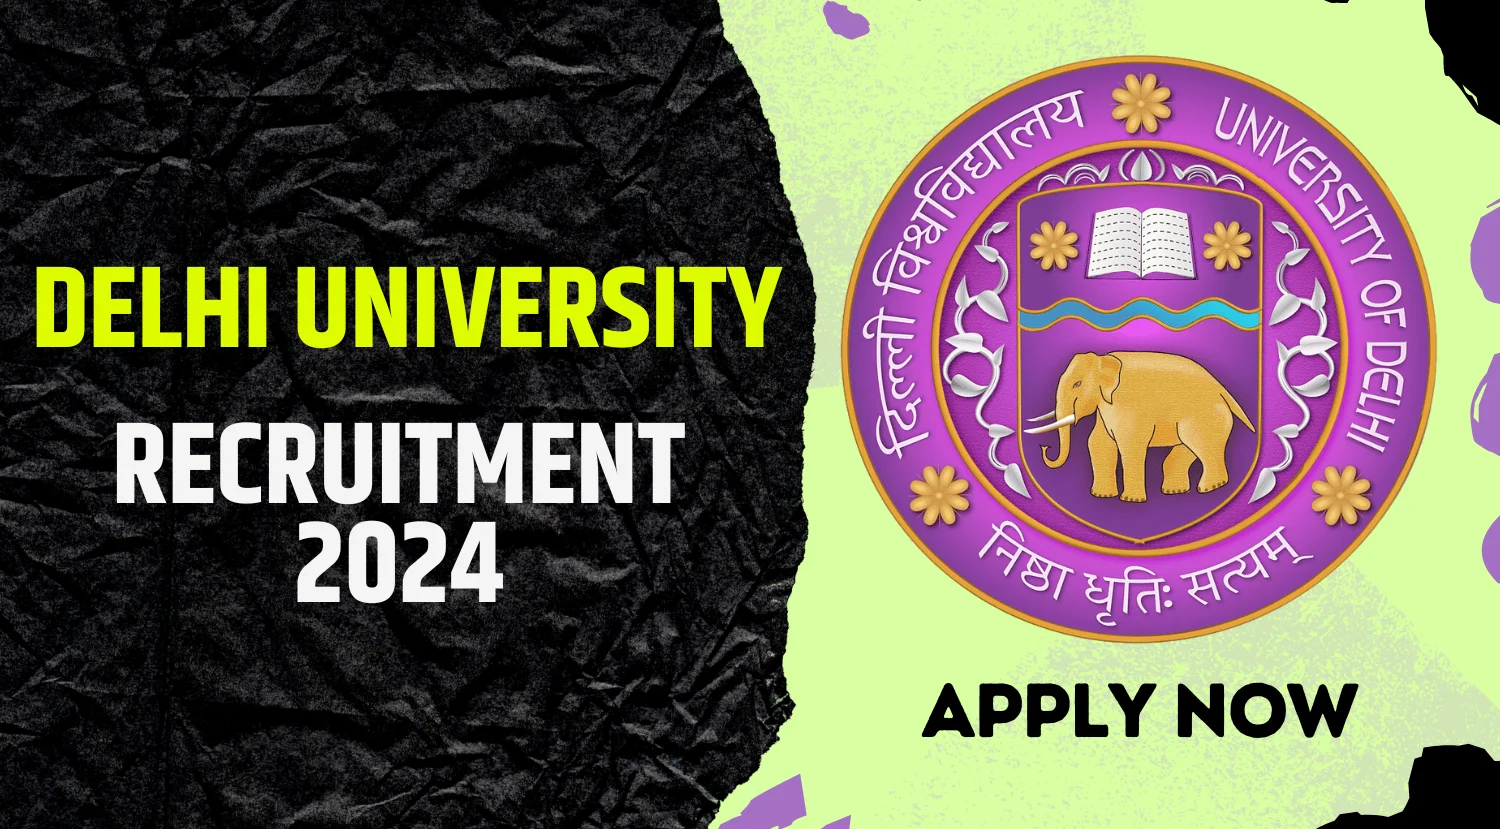 Delhi University recruitment 2024